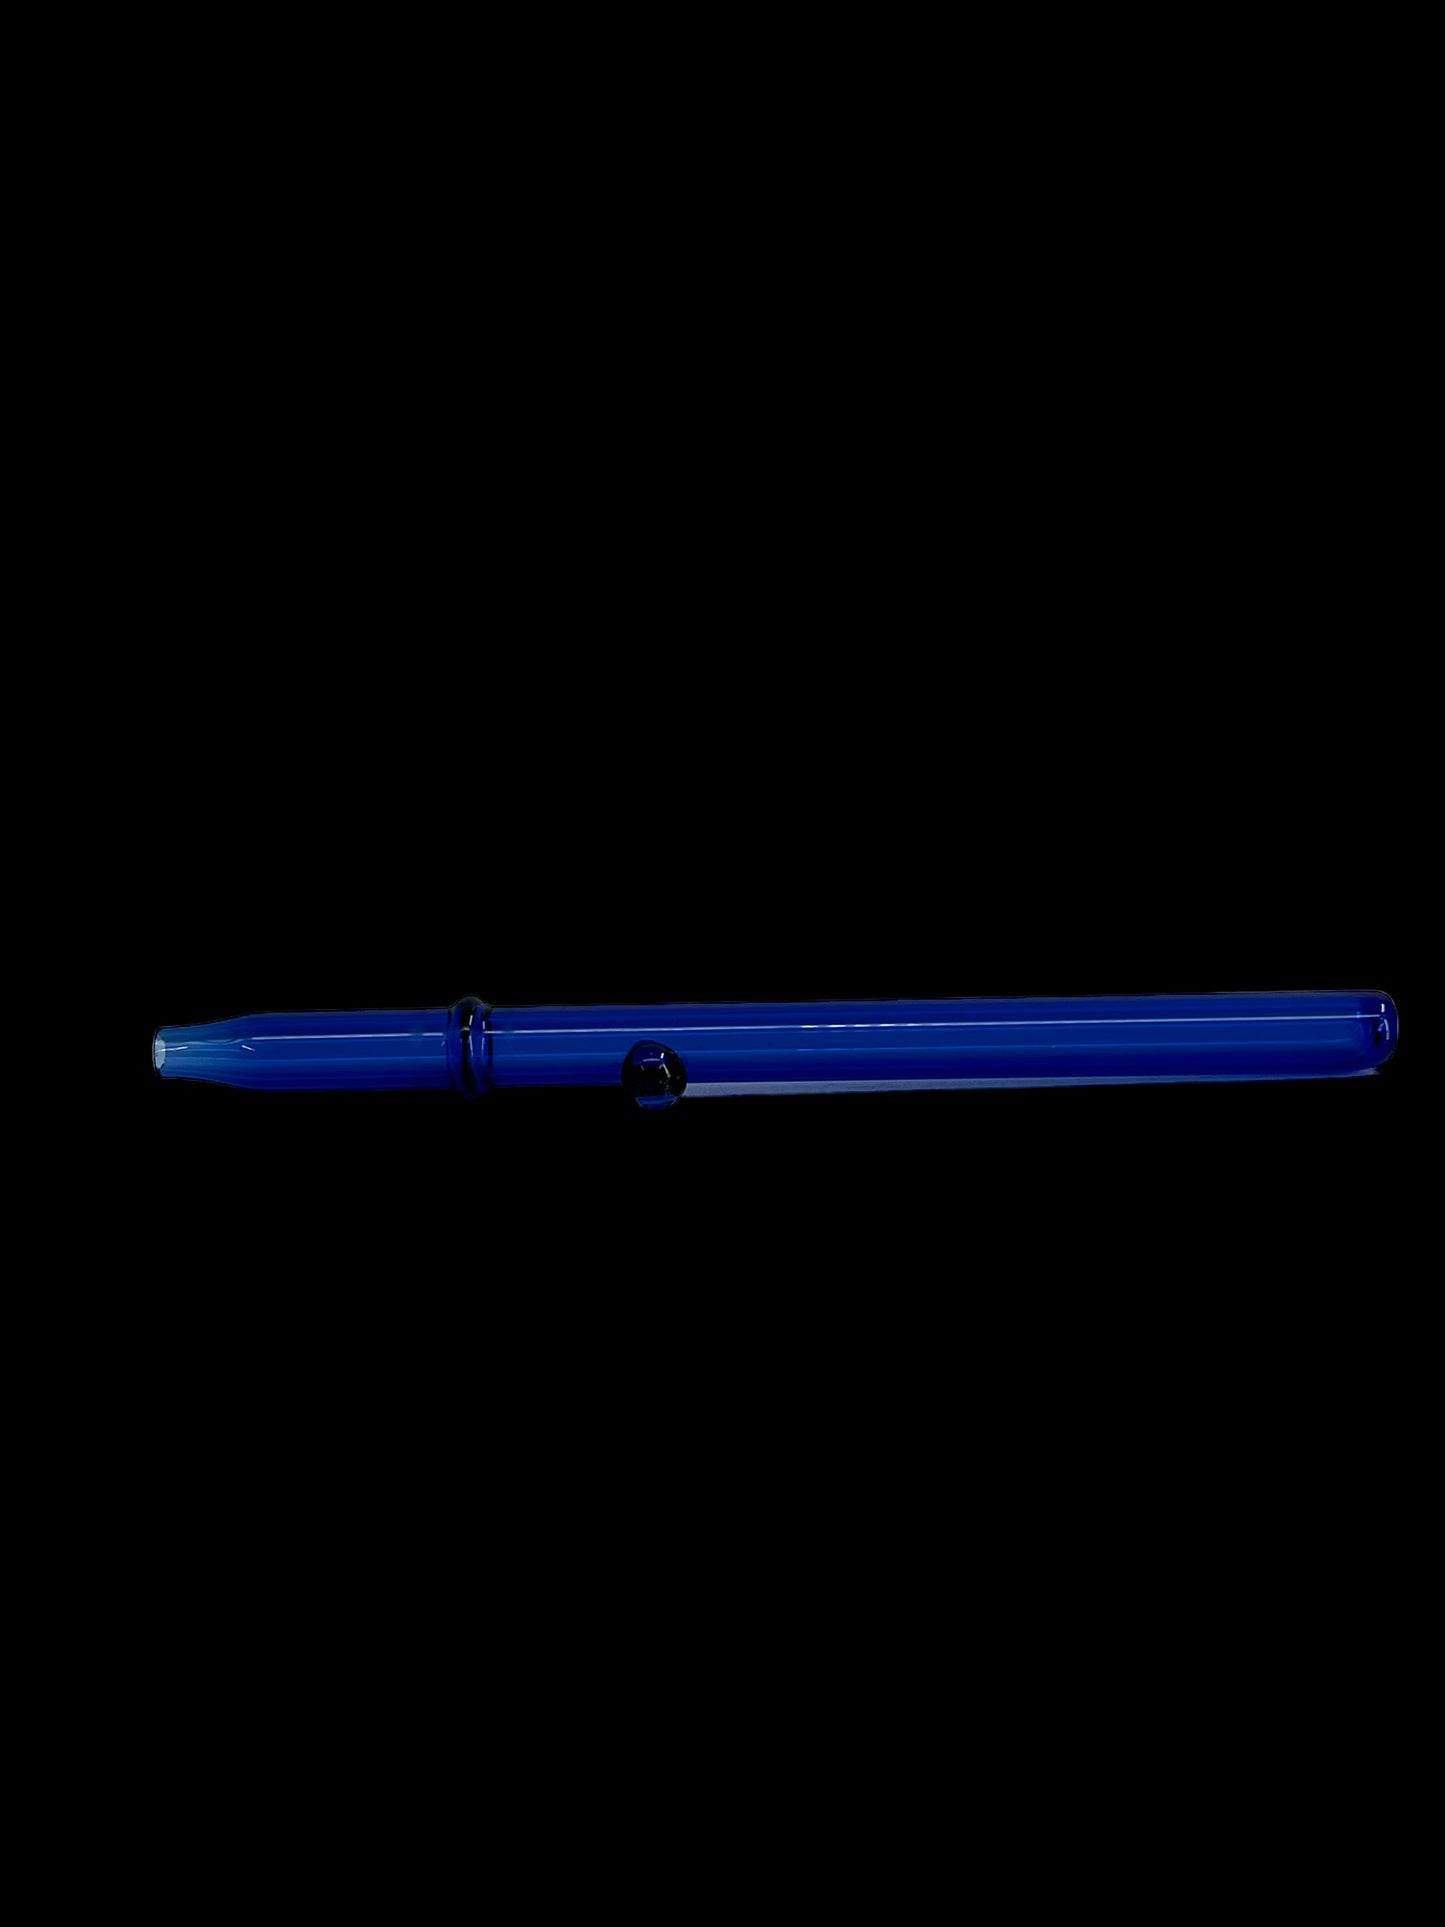 7" Glass Straw - Blue